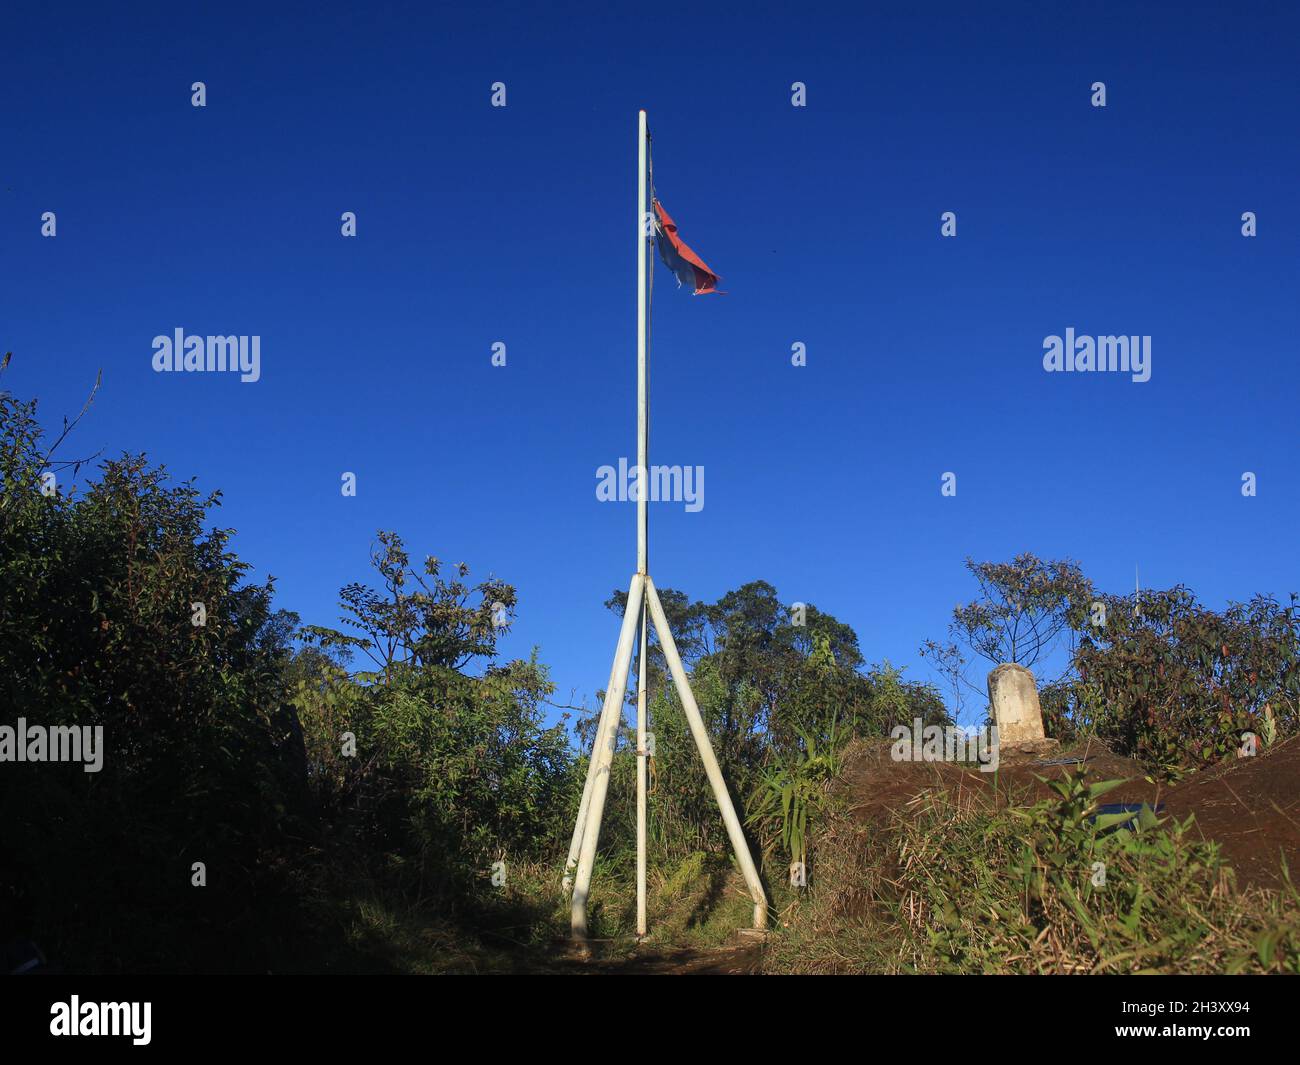 La bandiera rossa e bianca della Repubblica di Indonesia vola orgogliosamente sul monumento in ferro in cima al Monte Tugu, sullo sfondo blu cielo Foto Stock